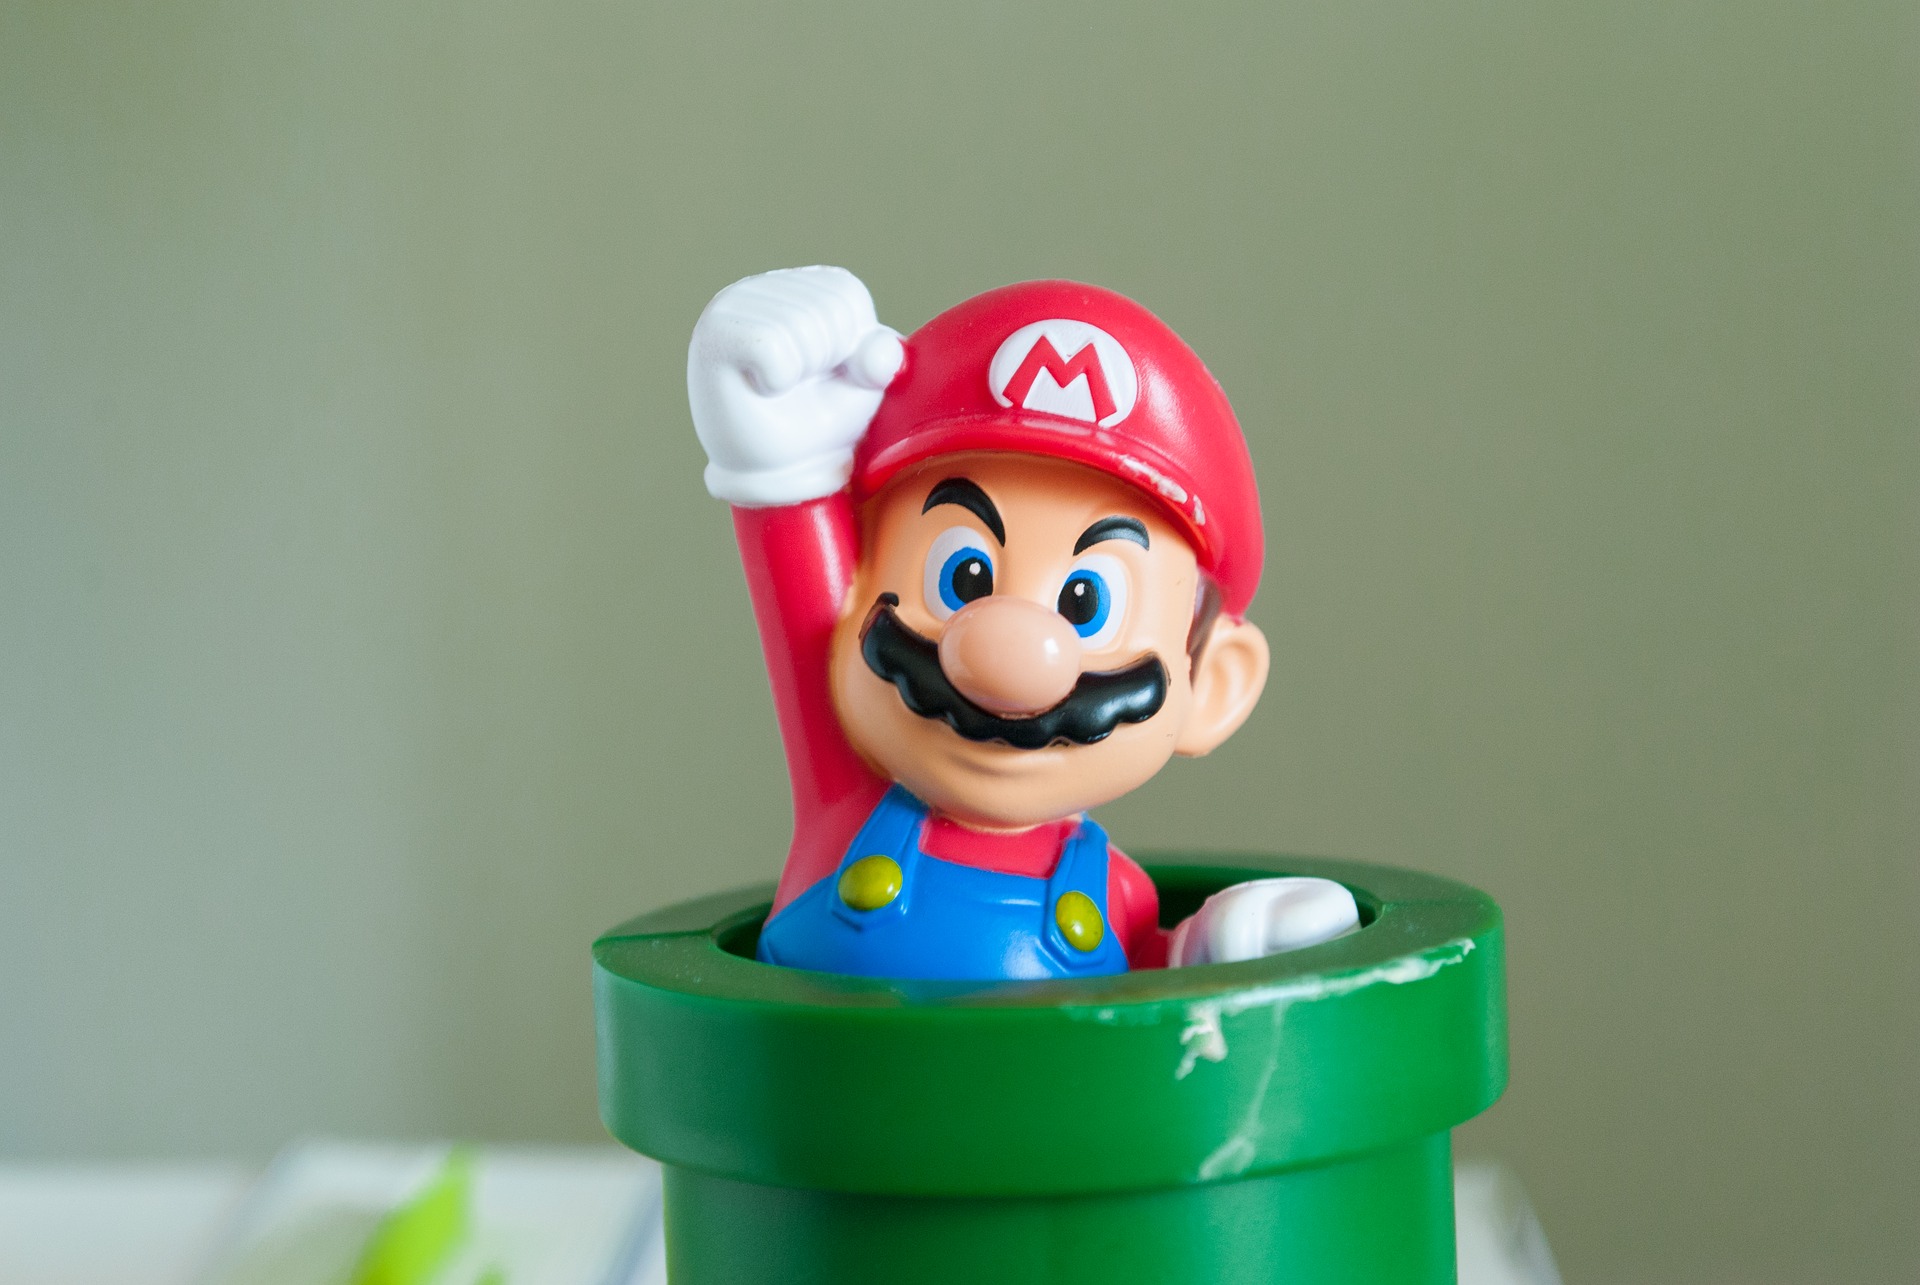  Mario était bien plombier… mais dans une autre vie